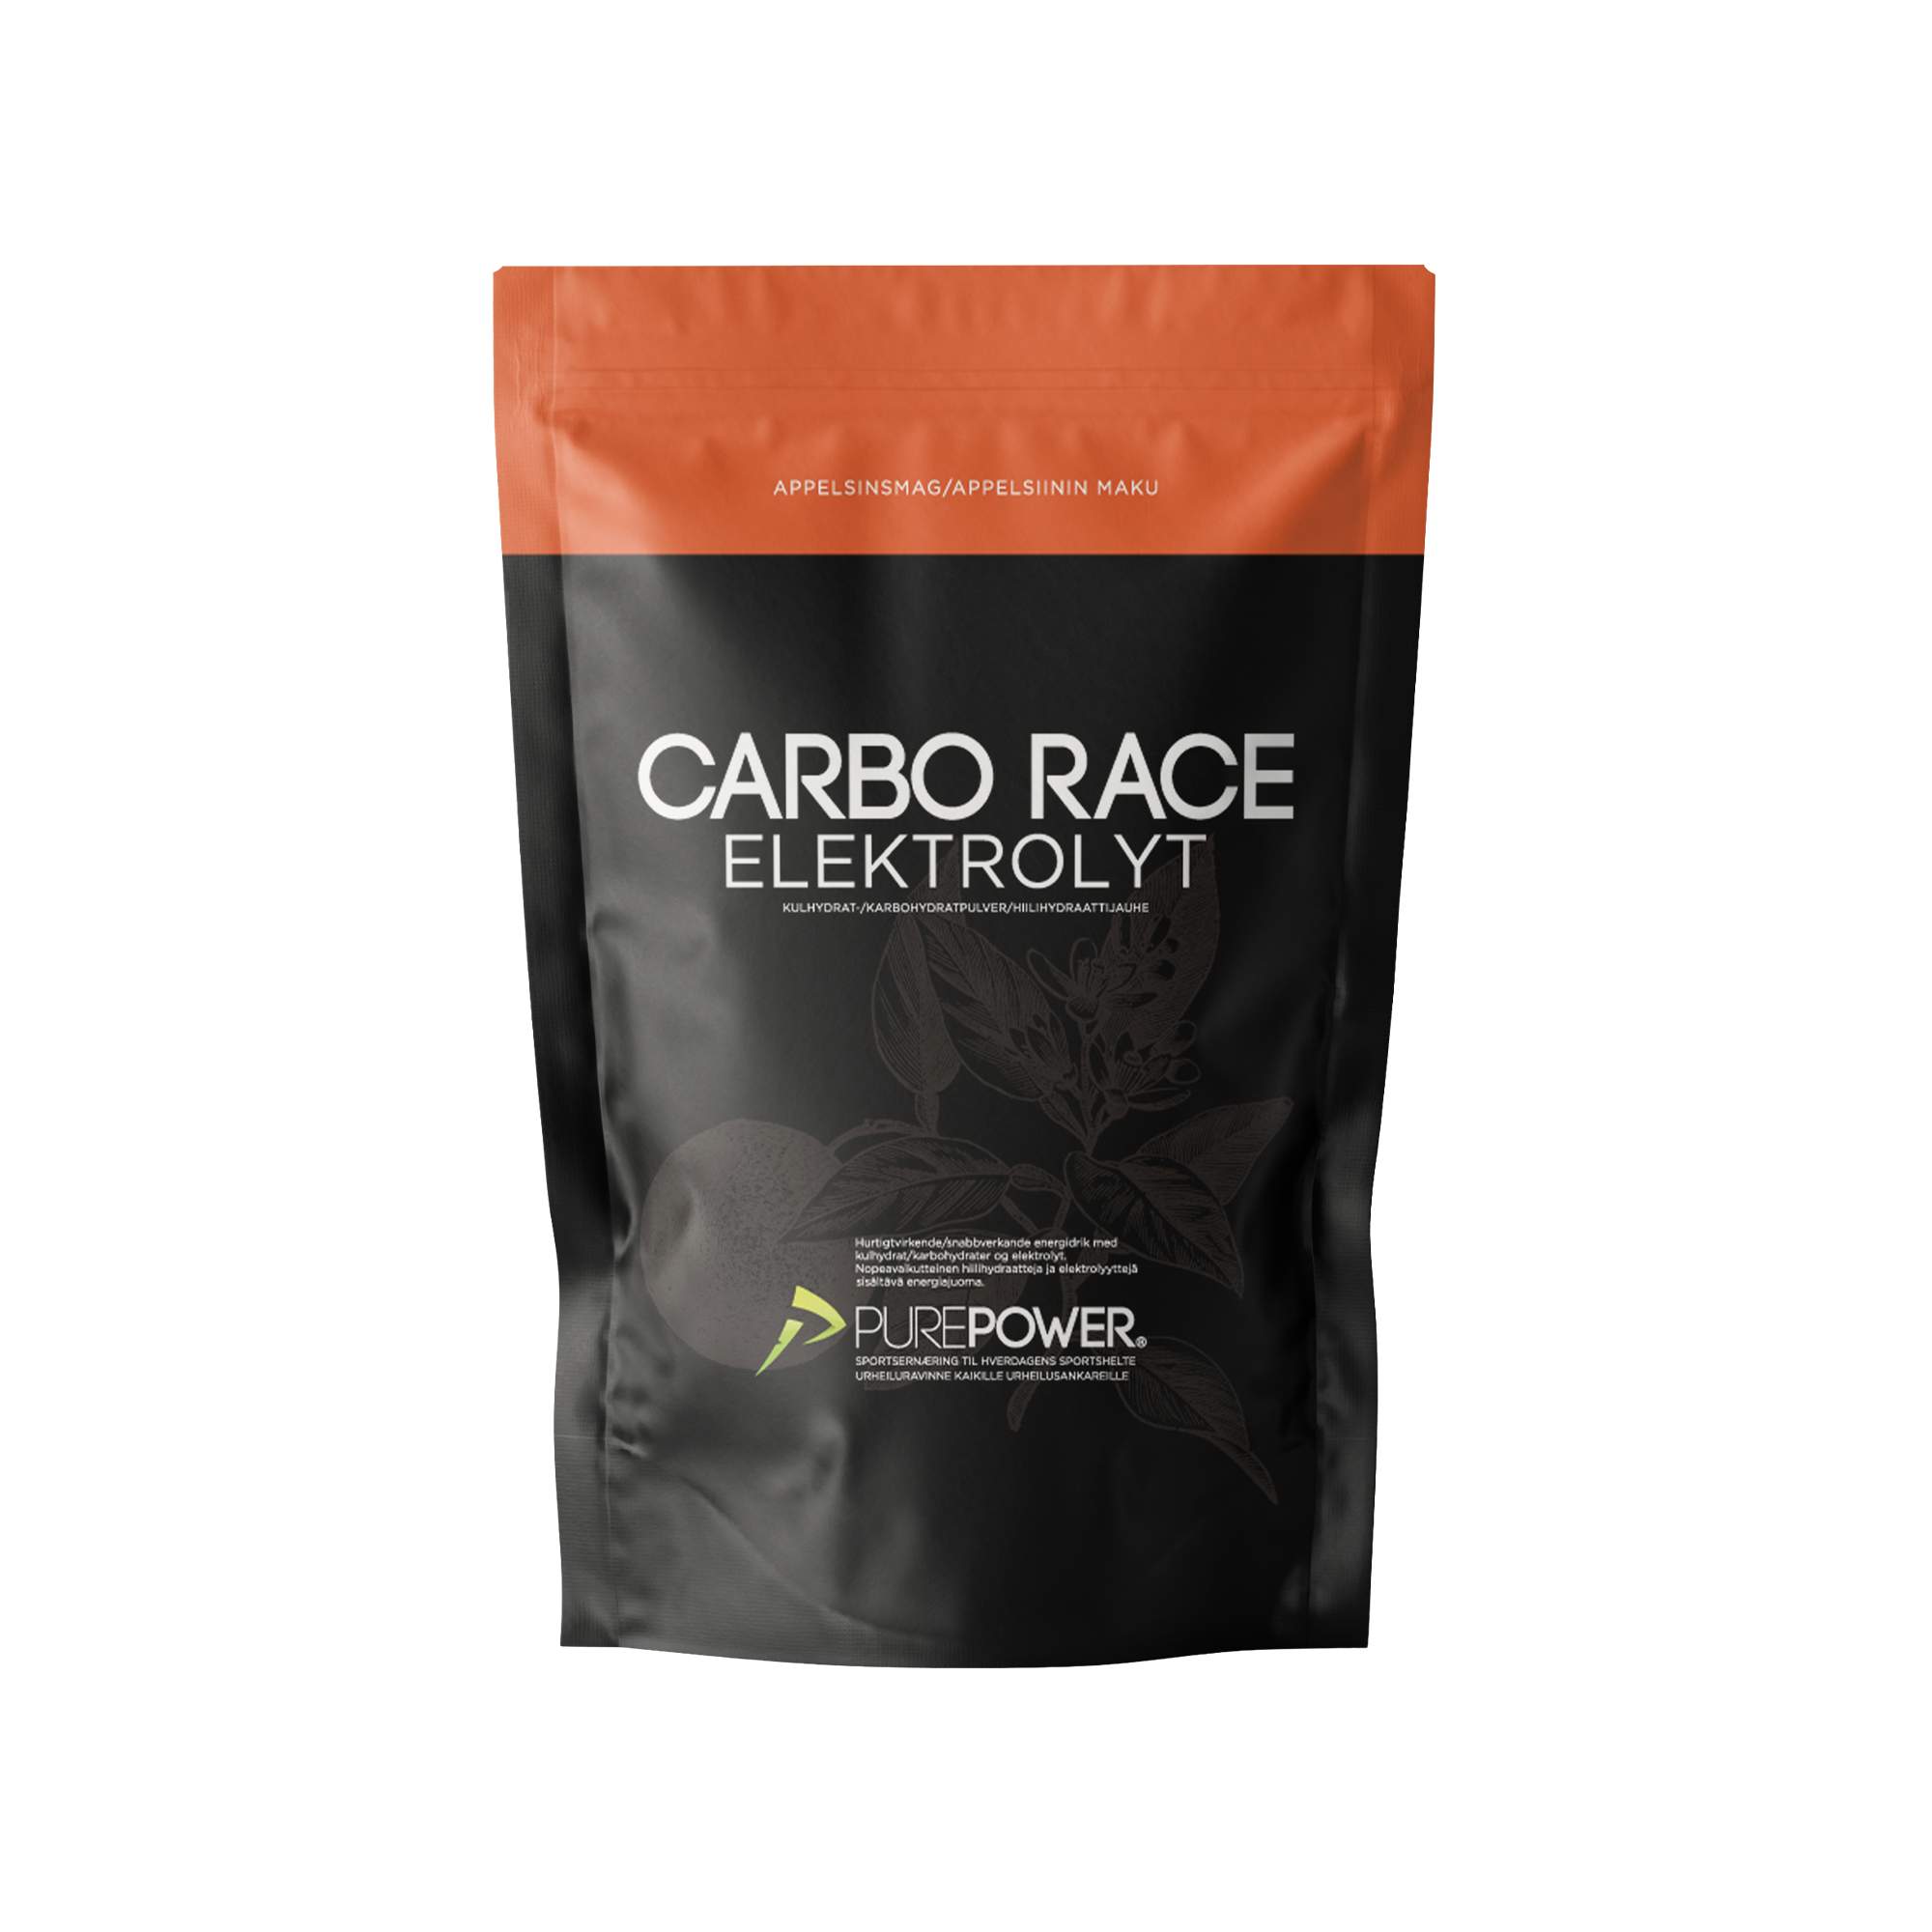 Billede af Carbo Race Elektrolyt Appelsin 1 kg hos PurePower